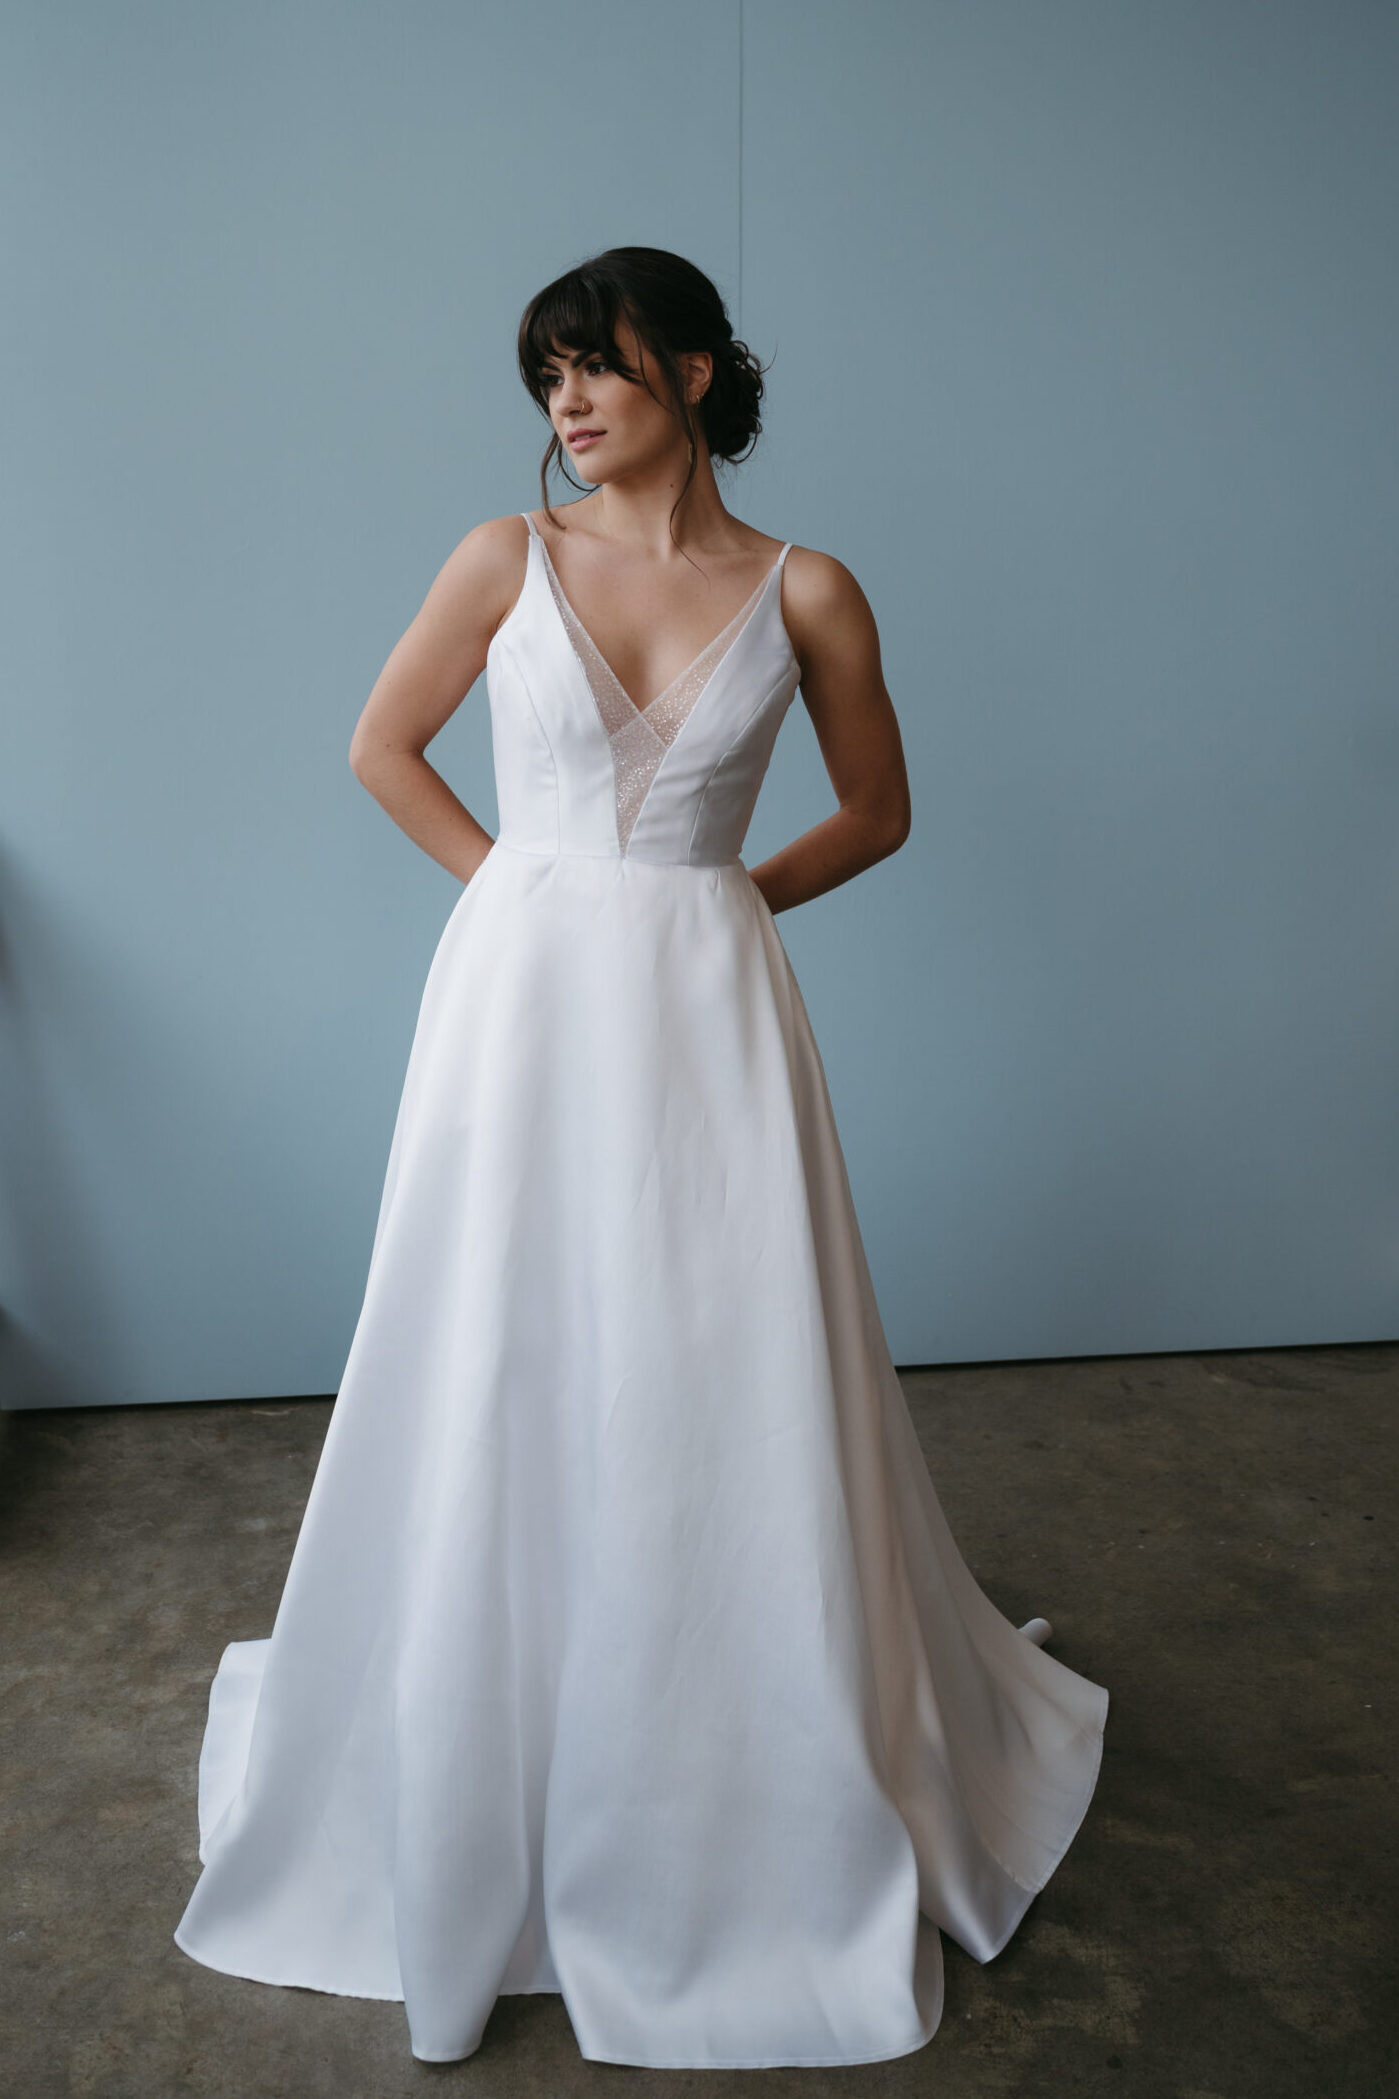 Cicada Bridal - custom wedding dresses and bridal gowns